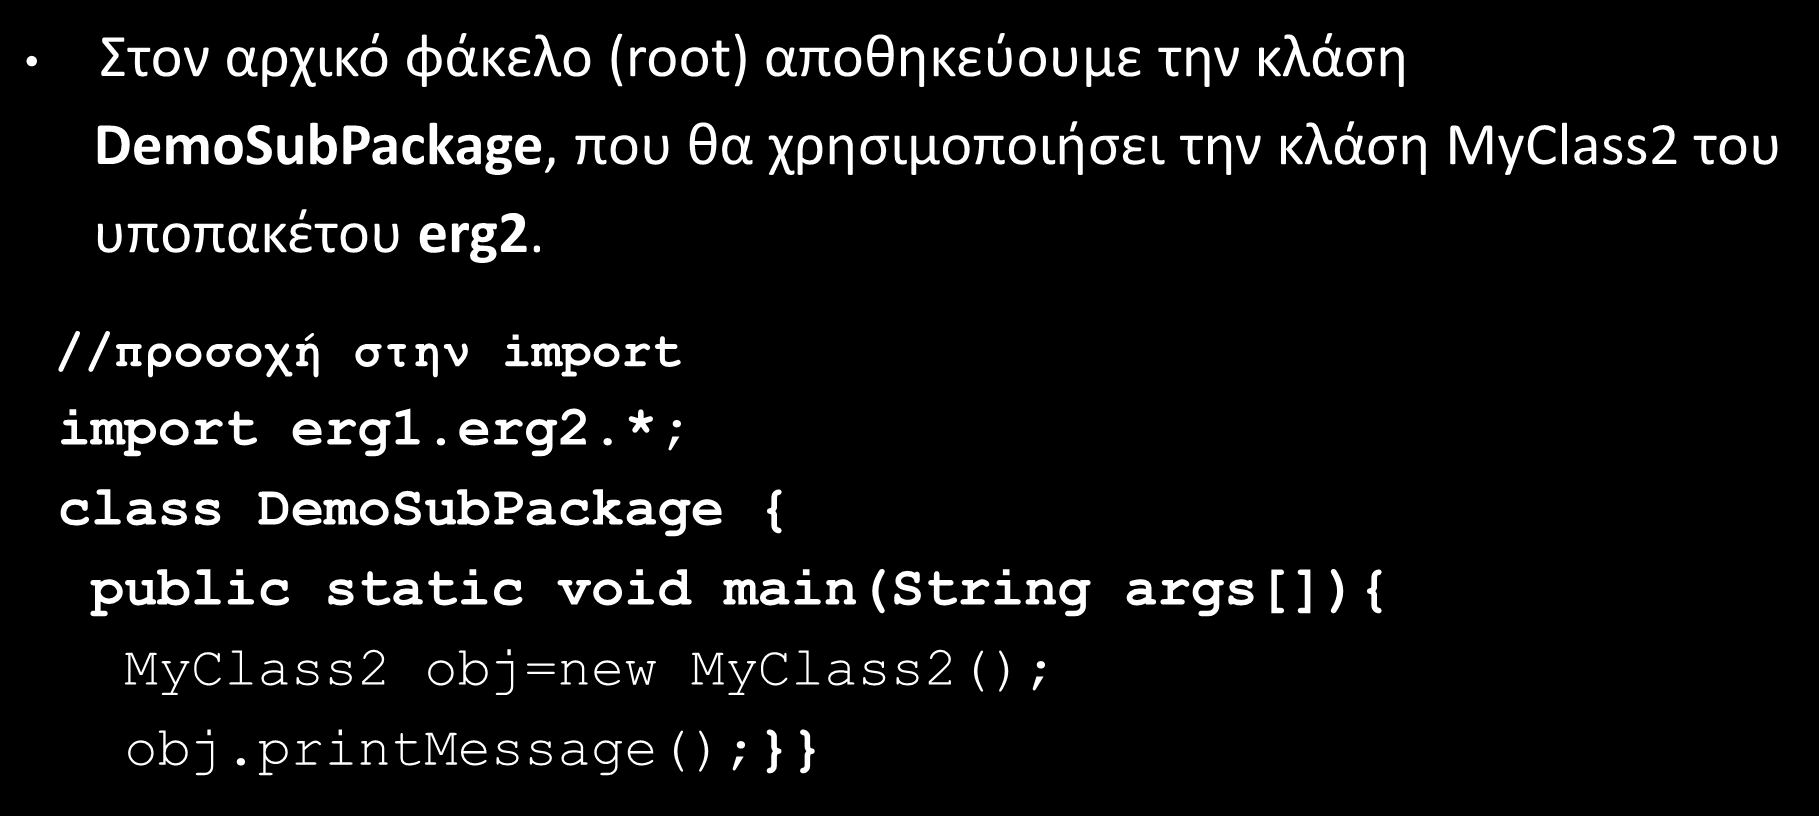 Υποπακέτα (Subpackages) (2/2) Στον αρχικό φάκελο (root) αποθηκεύουμε την κλάση DemoSubPackage, που θα χρησιμοποιήσει την κλάση MyClass2 του υποπακέτου erg2.